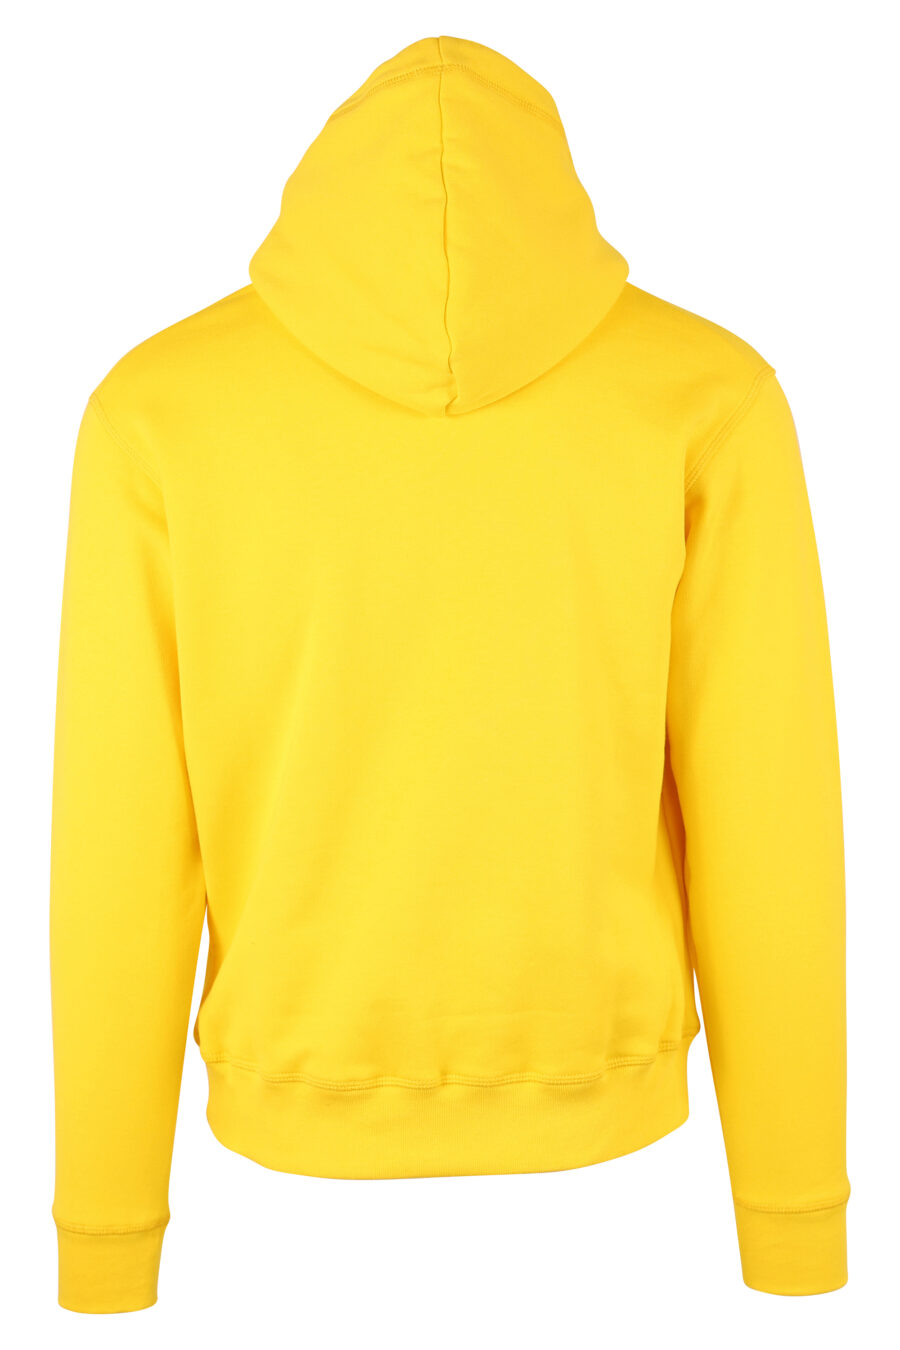 Camisola com capuz amarela com logótipo duplo "ícone" - IMG 9737